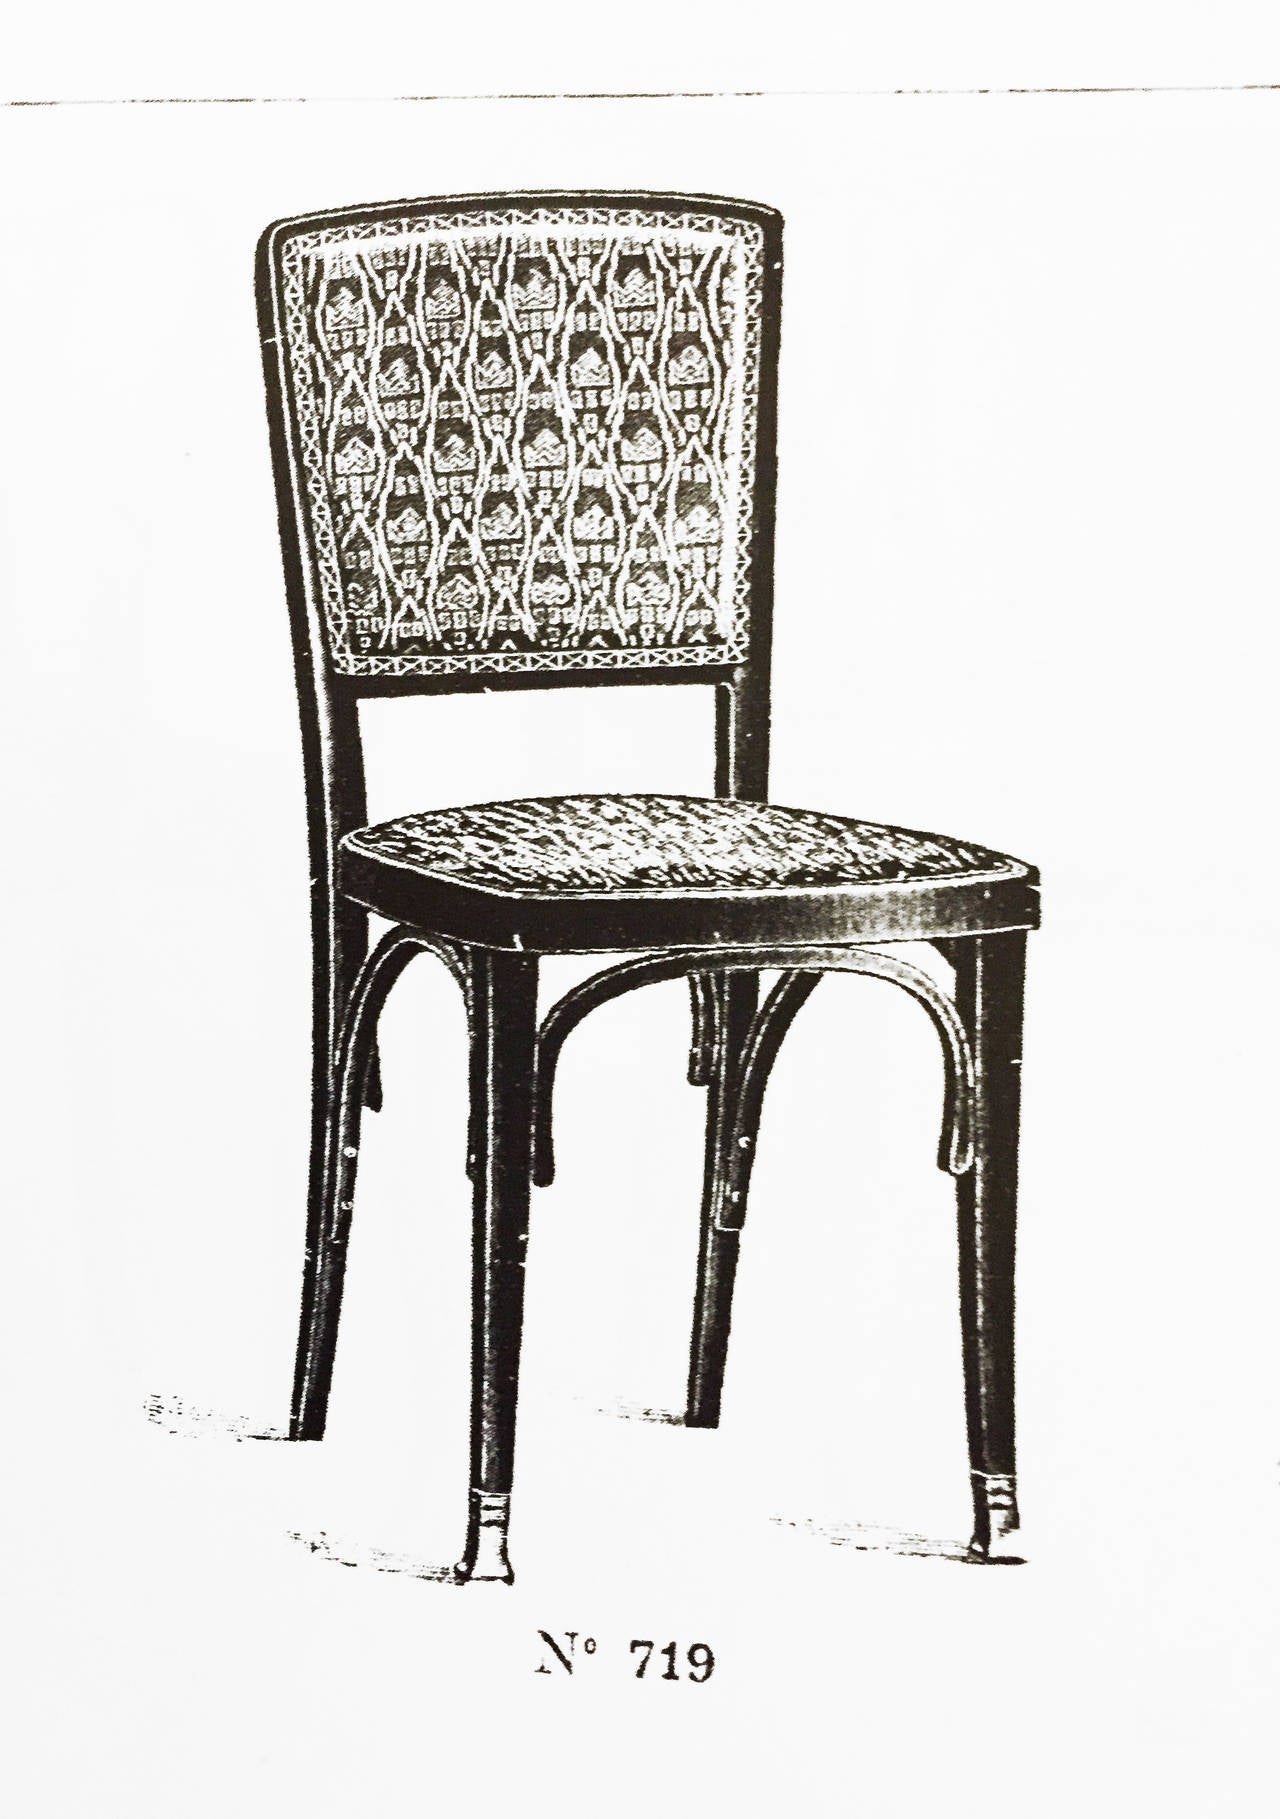 Paire de chaises Vienna Seccesion de Kohn (modèle no. 719) attribuées à Koloman Moser.
Les chaises ne sont pas restaurées et la restauration peut être effectuée sur demande.
Beeche, bois courbé, acajou/noisette teinté, poli.
Rembourrage sur